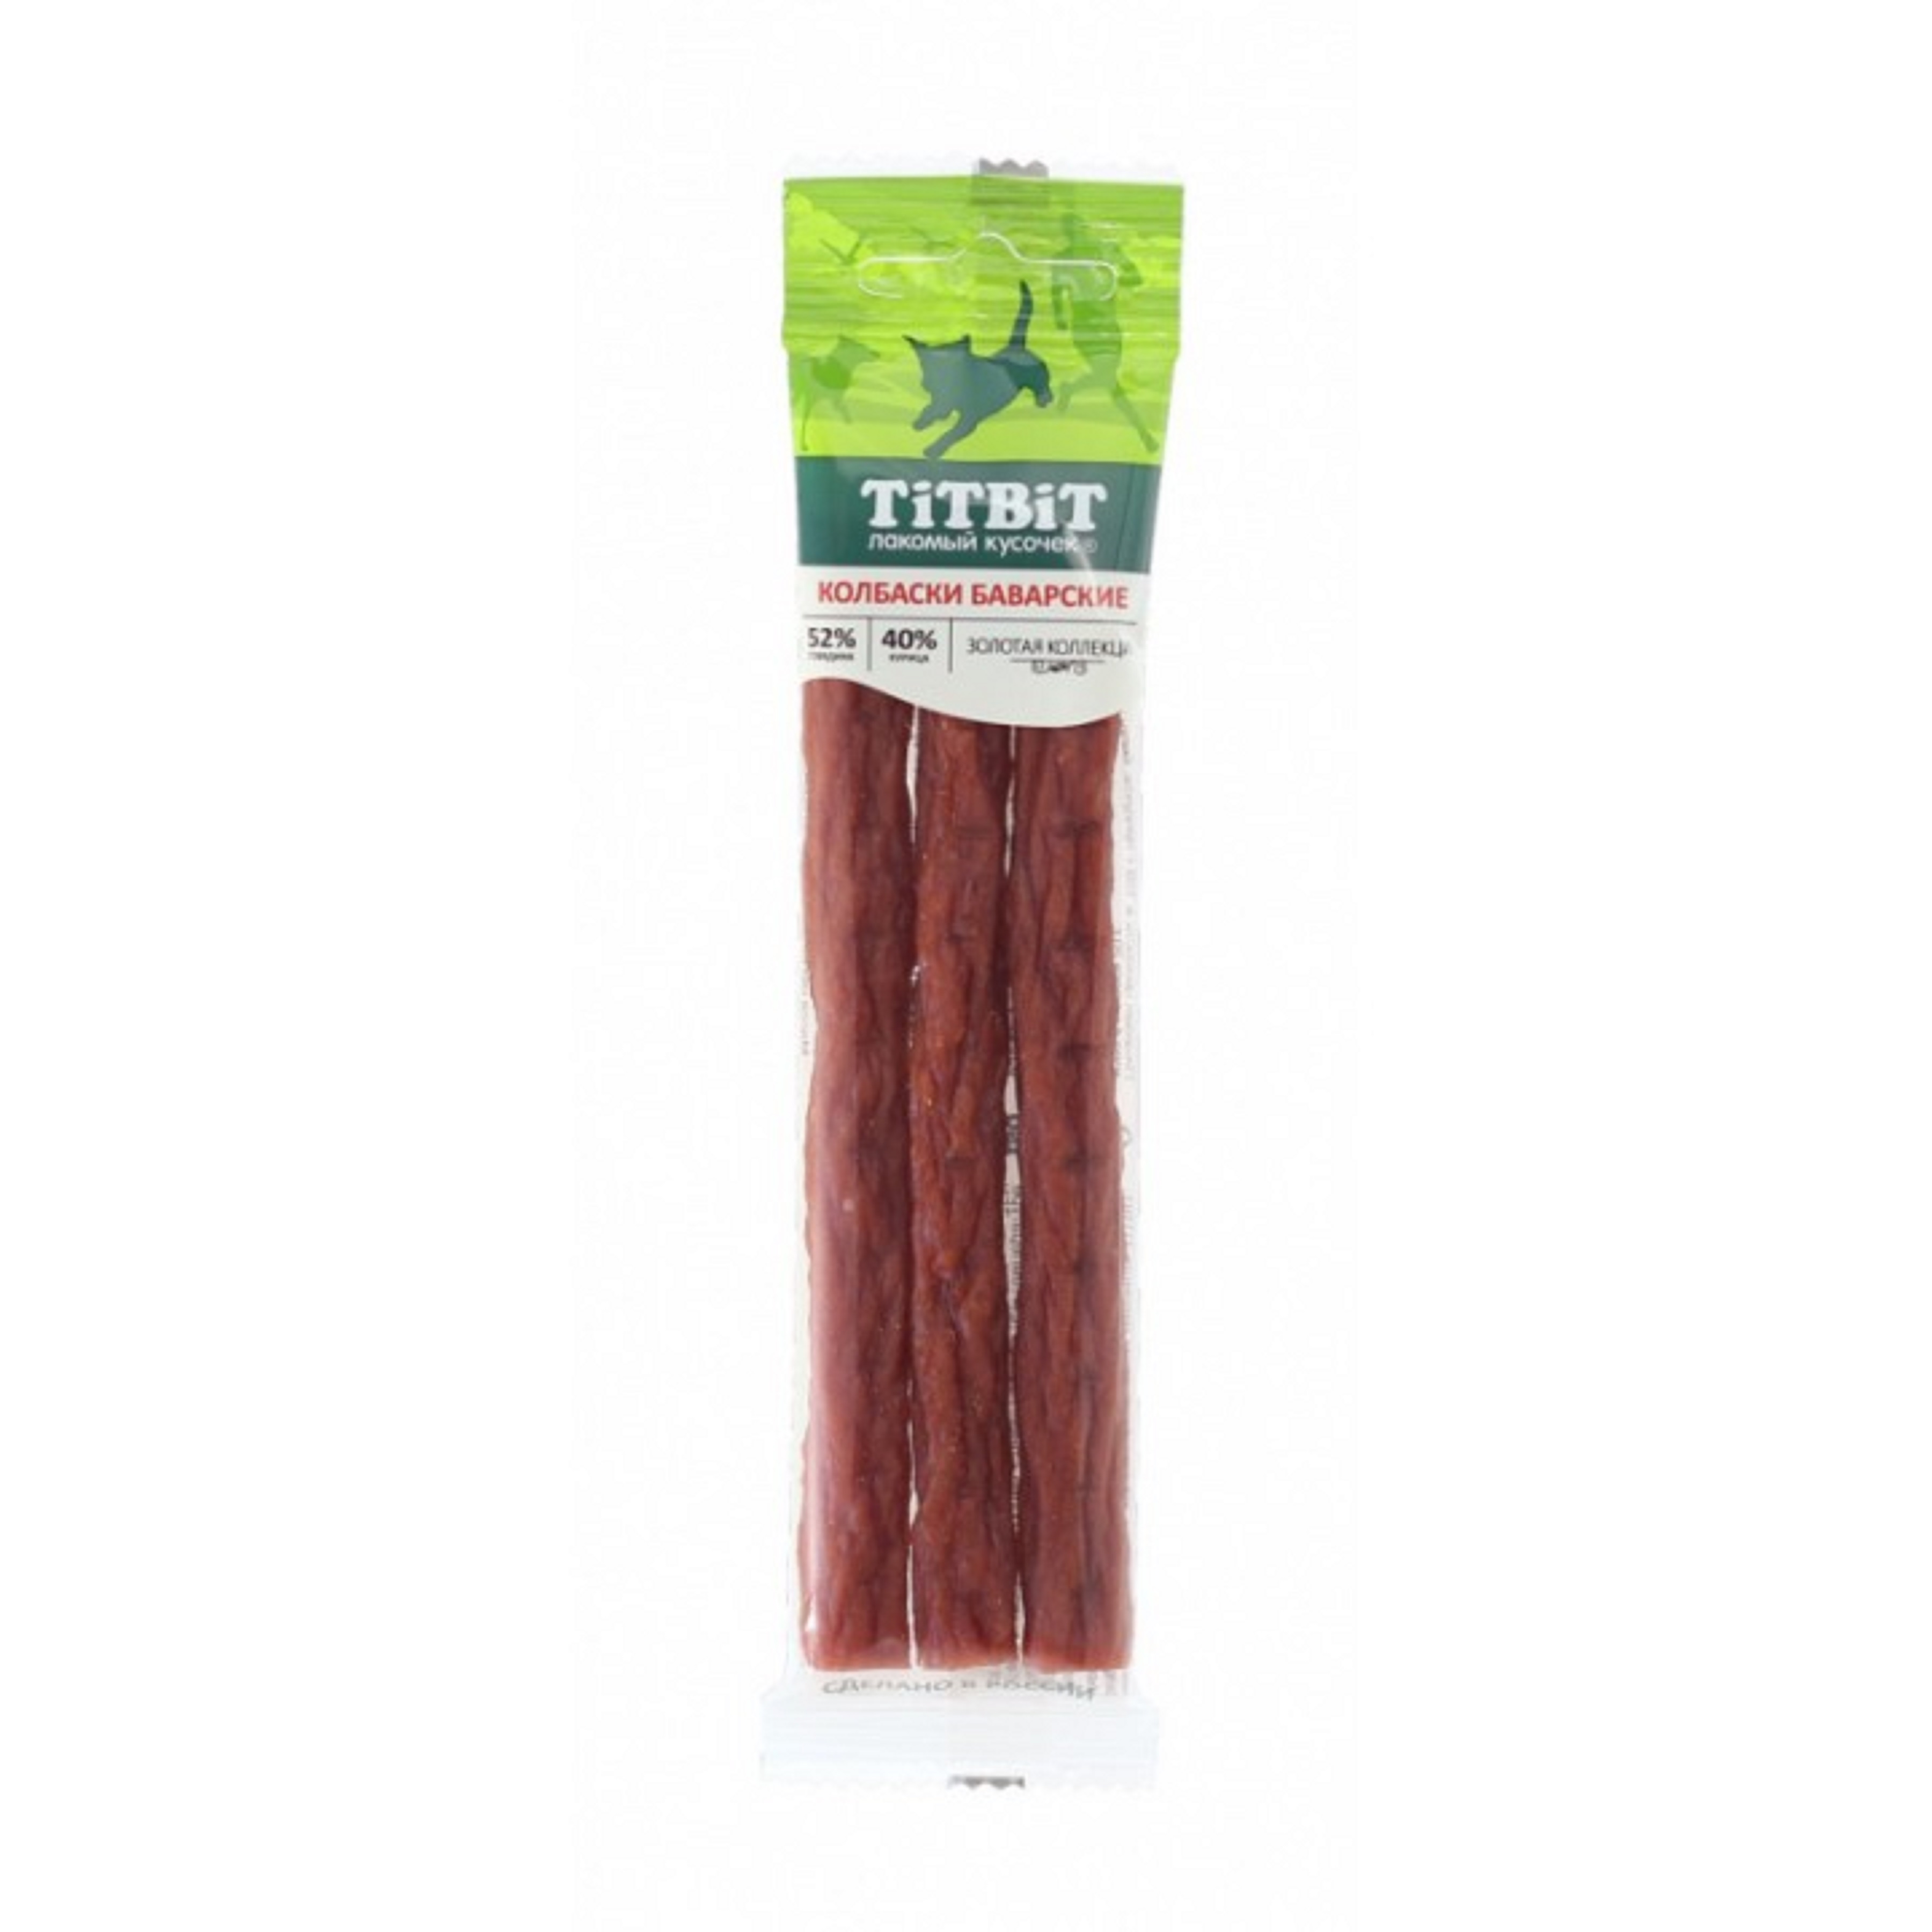 лакомства для собак "titbit" (титбит) колбаски баварские, 35 г